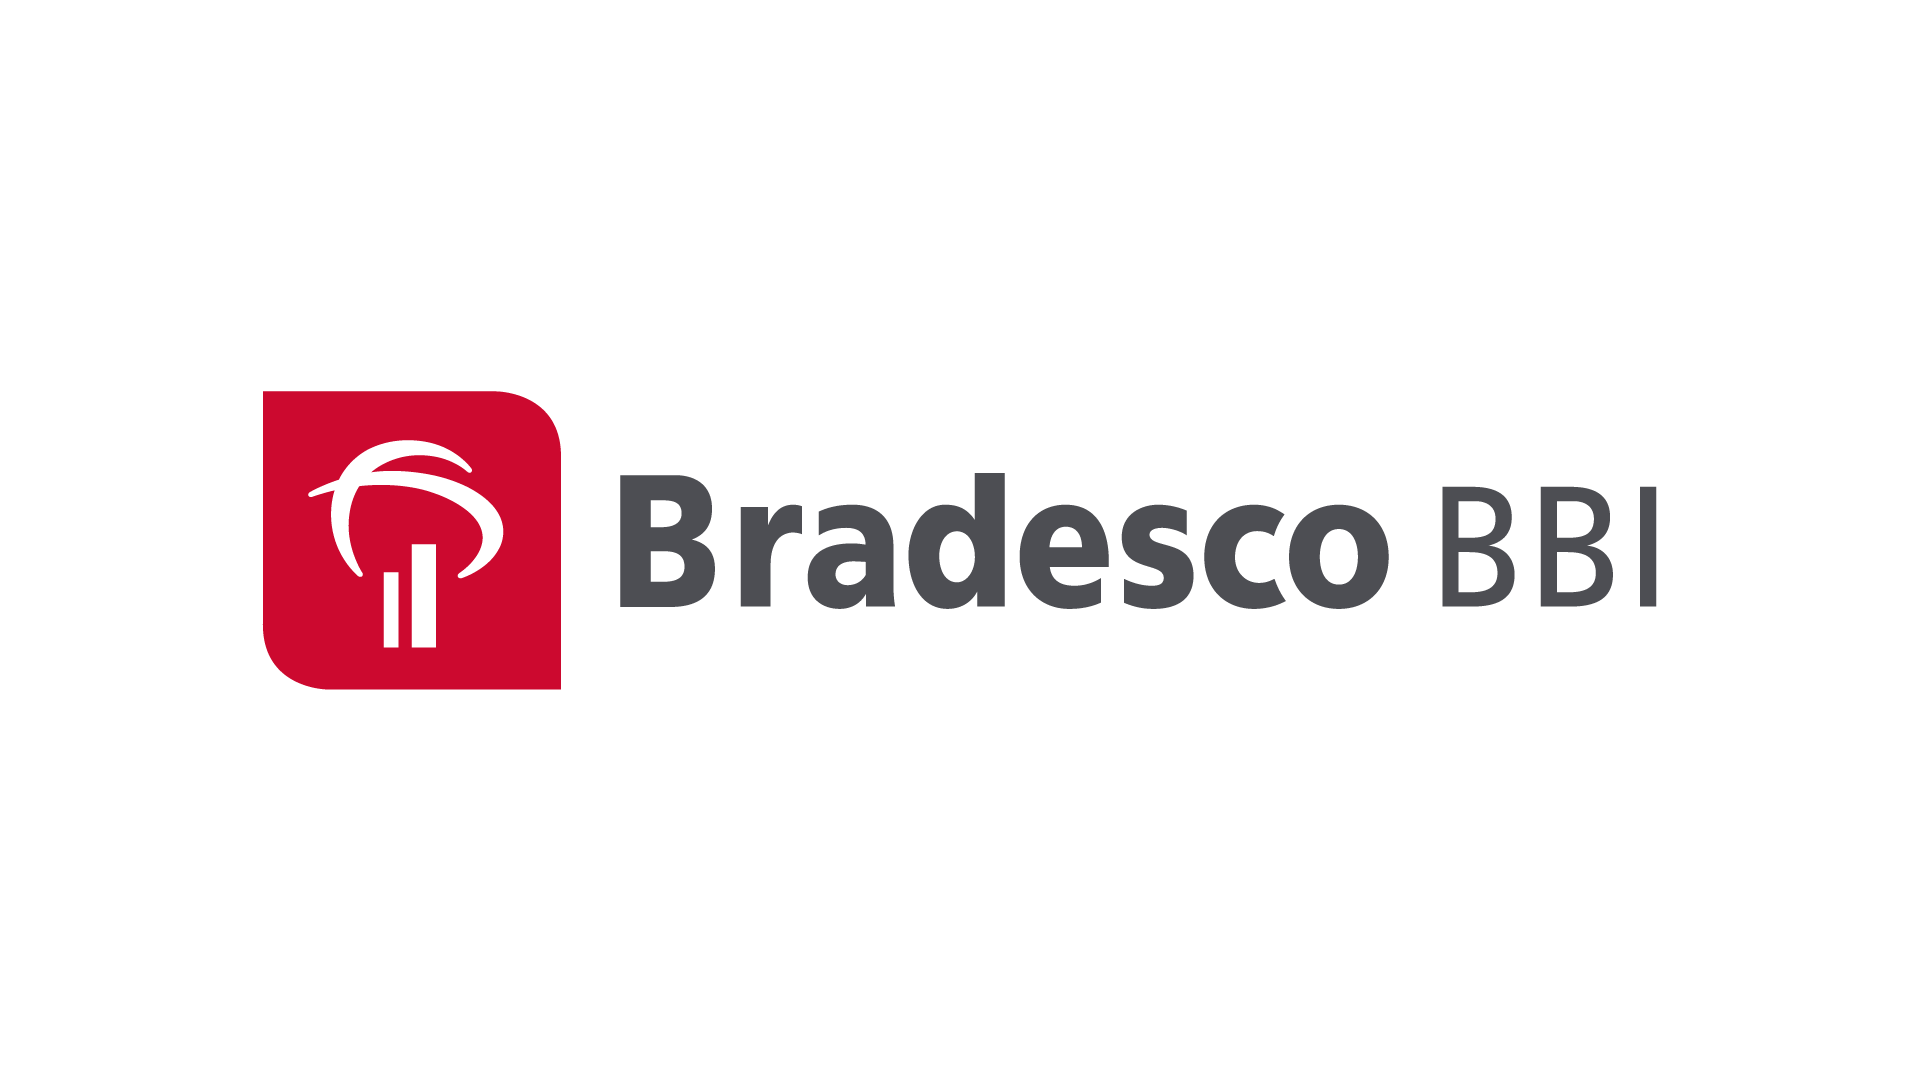 Bradesco Logo Vector - Banco 